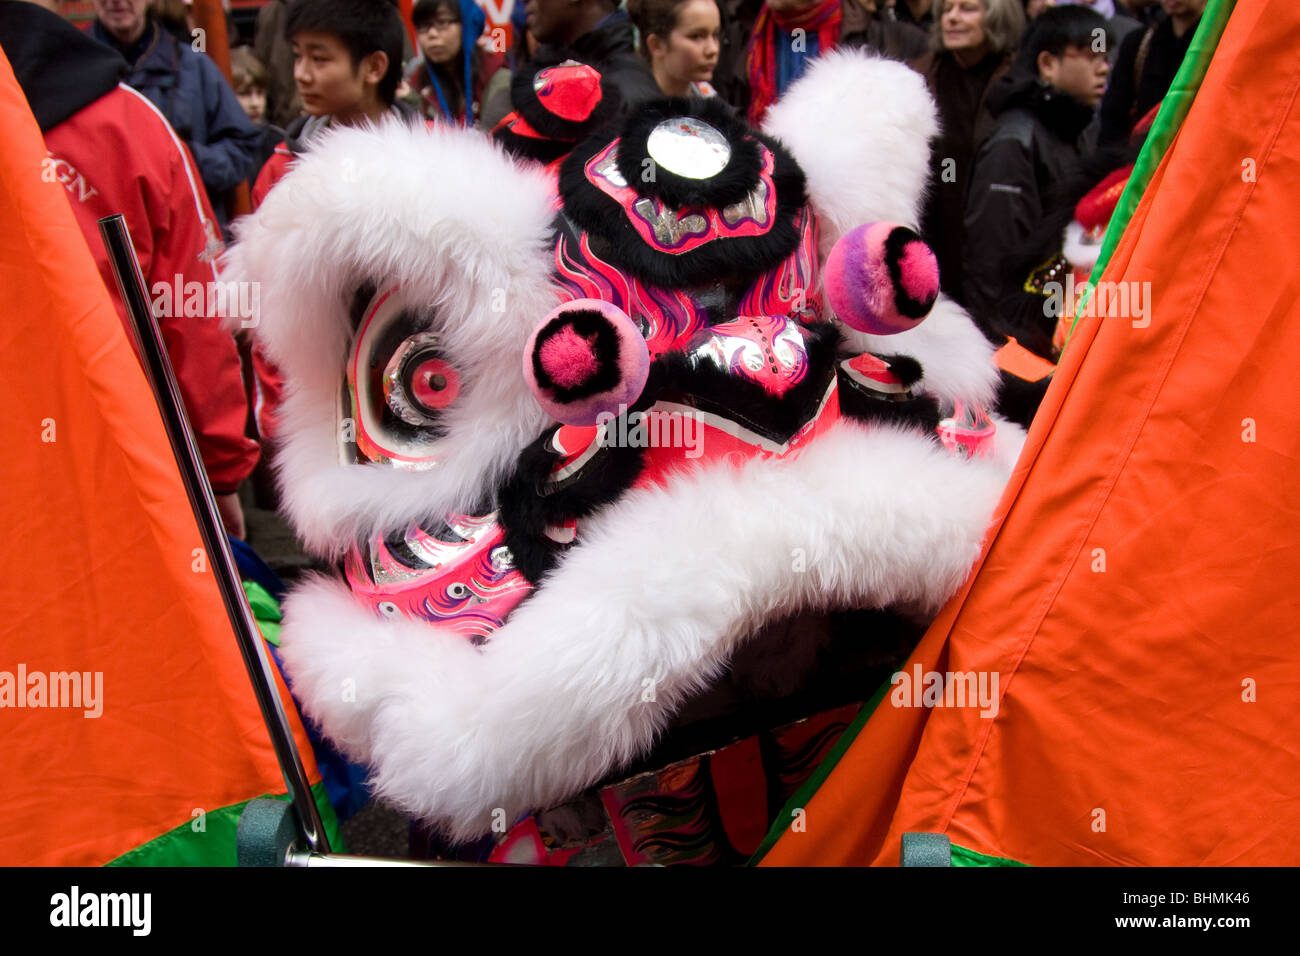 Chinese New Year celebrations , Year of the Tiger, Soho, London, UK Stock Photo